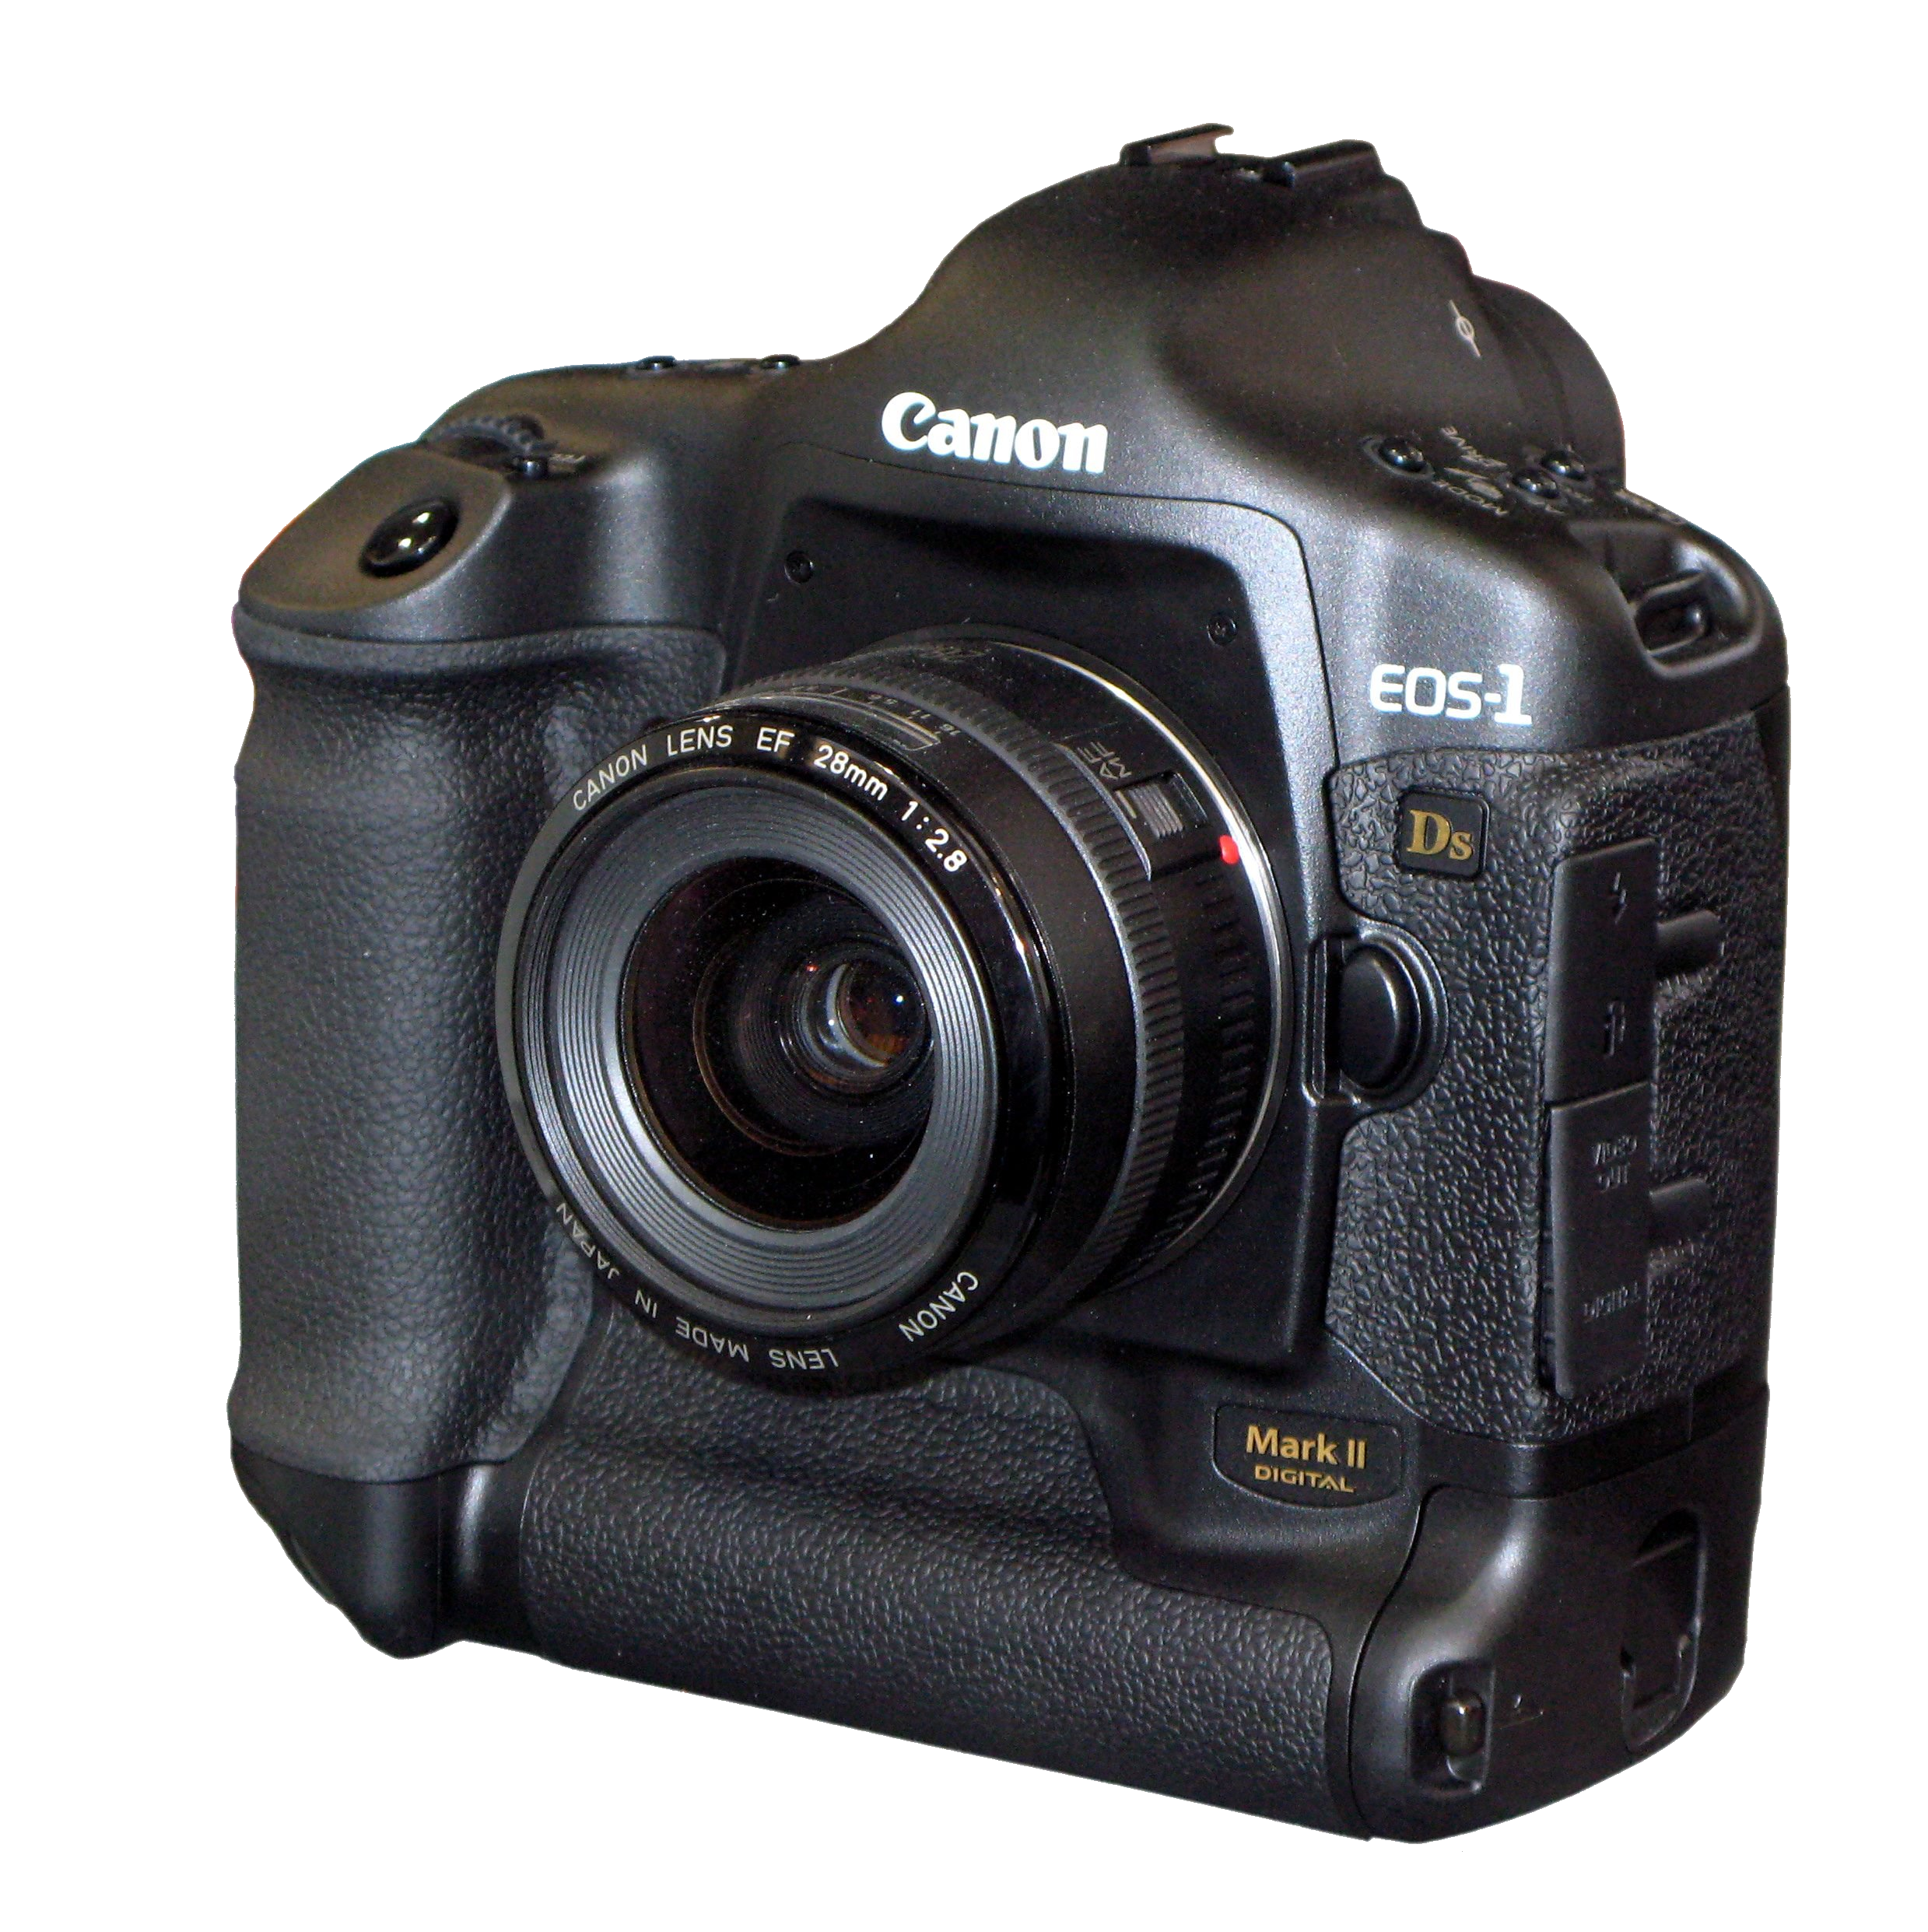 Canon 1ds mark. Canon 1ds Mark II. Canon EOS-1ds Mark II. Canon 1d Mark III. Canon EOS-1.